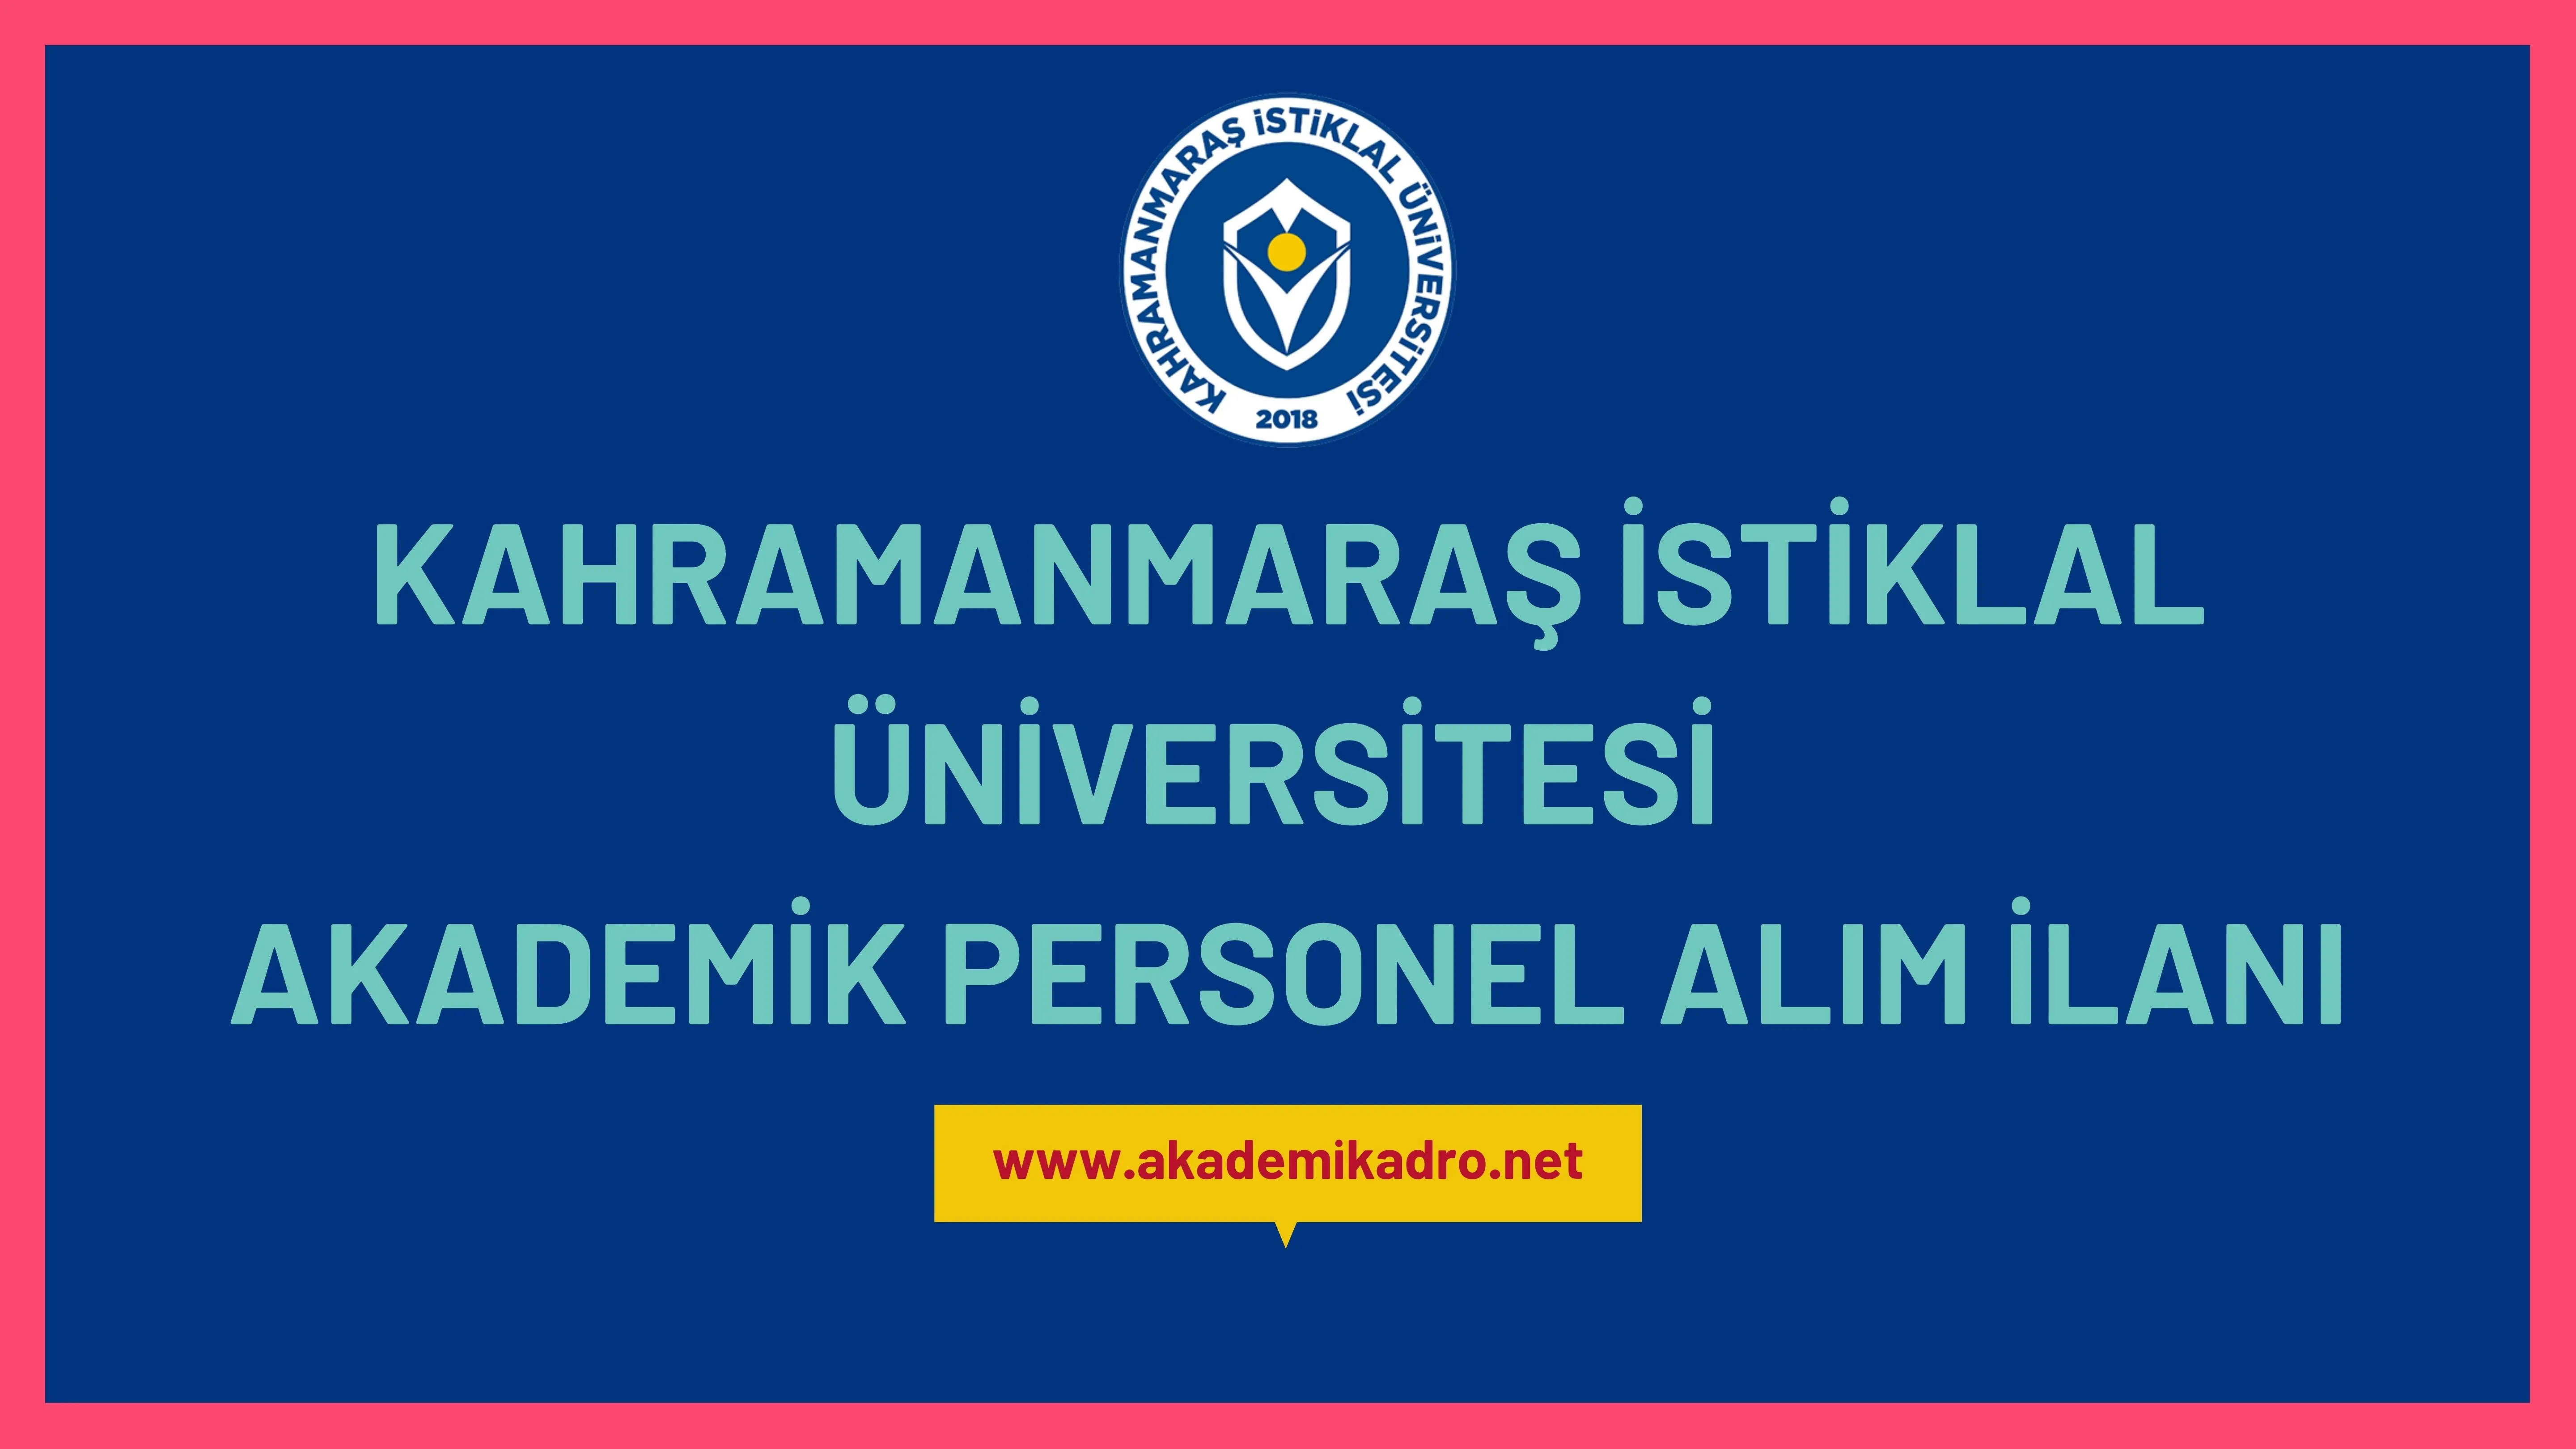 Kahramanmaraş İstiklal Üniversitesi birçok alandan 17 akademik personel alacak.